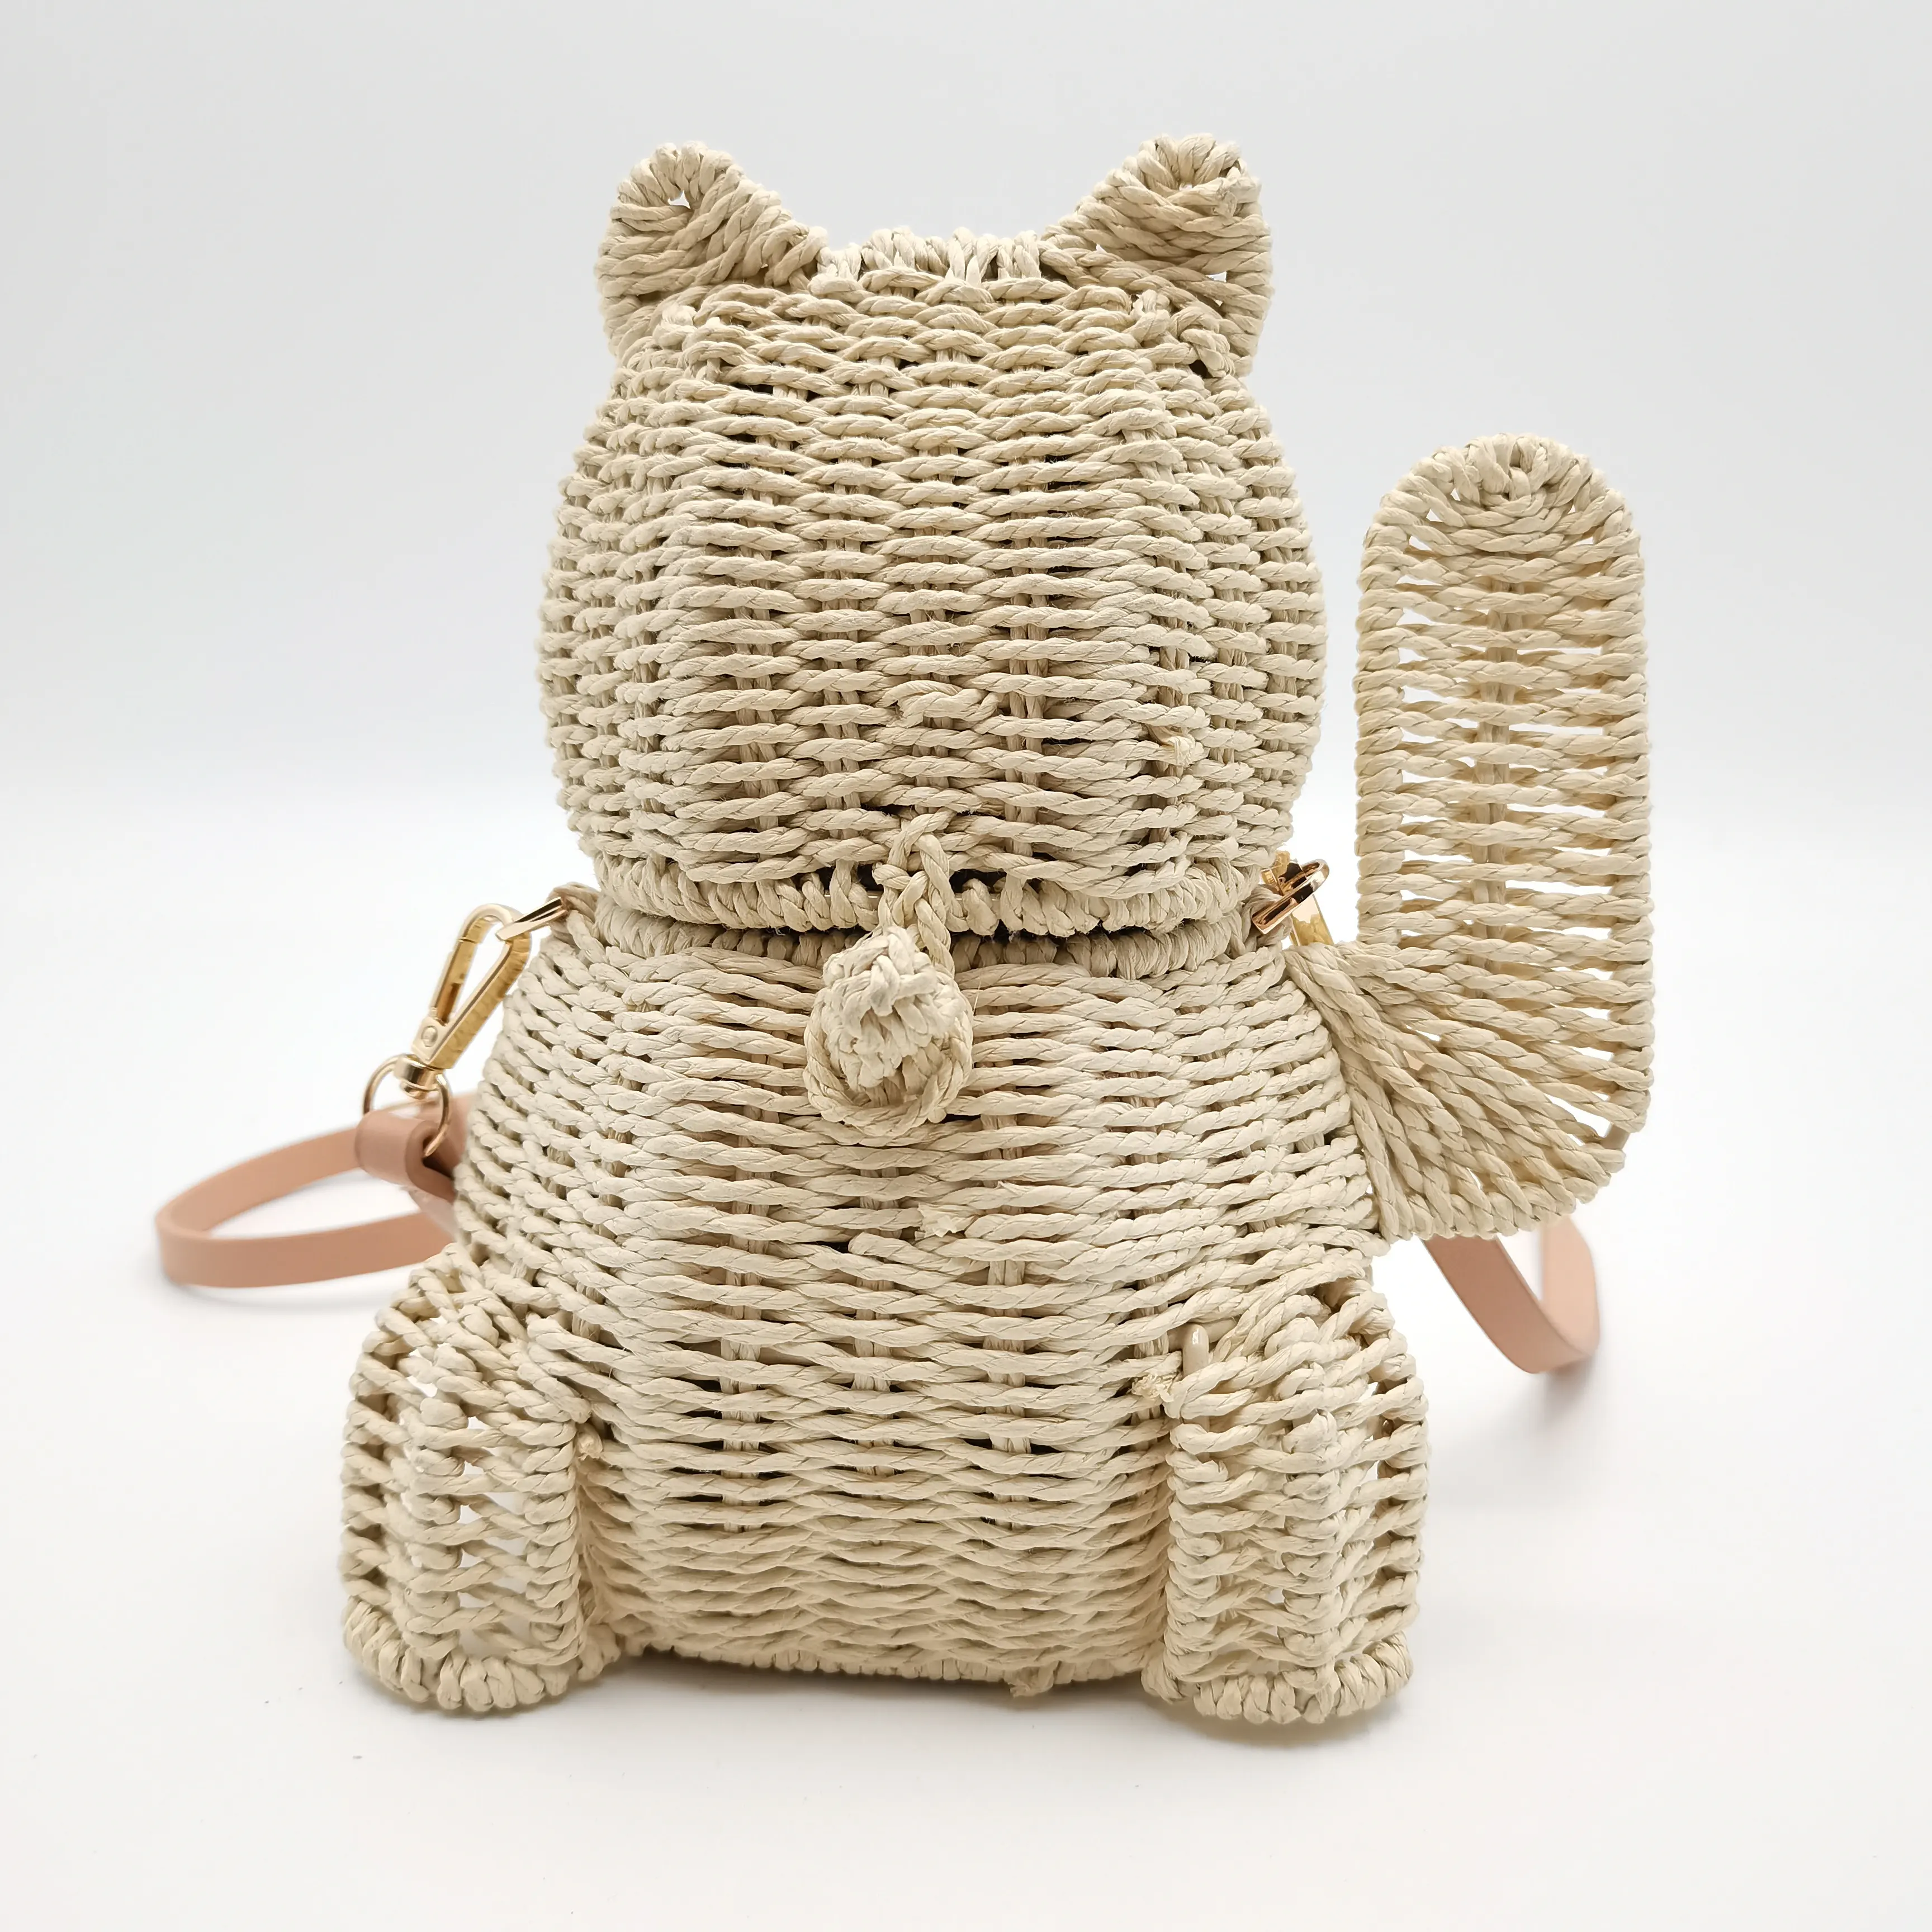 Оптовая продажа, плетеная пляжная Соломенная Сумка-тоут fortune cat, летняя женская плетеная корзина, сумка через плечо